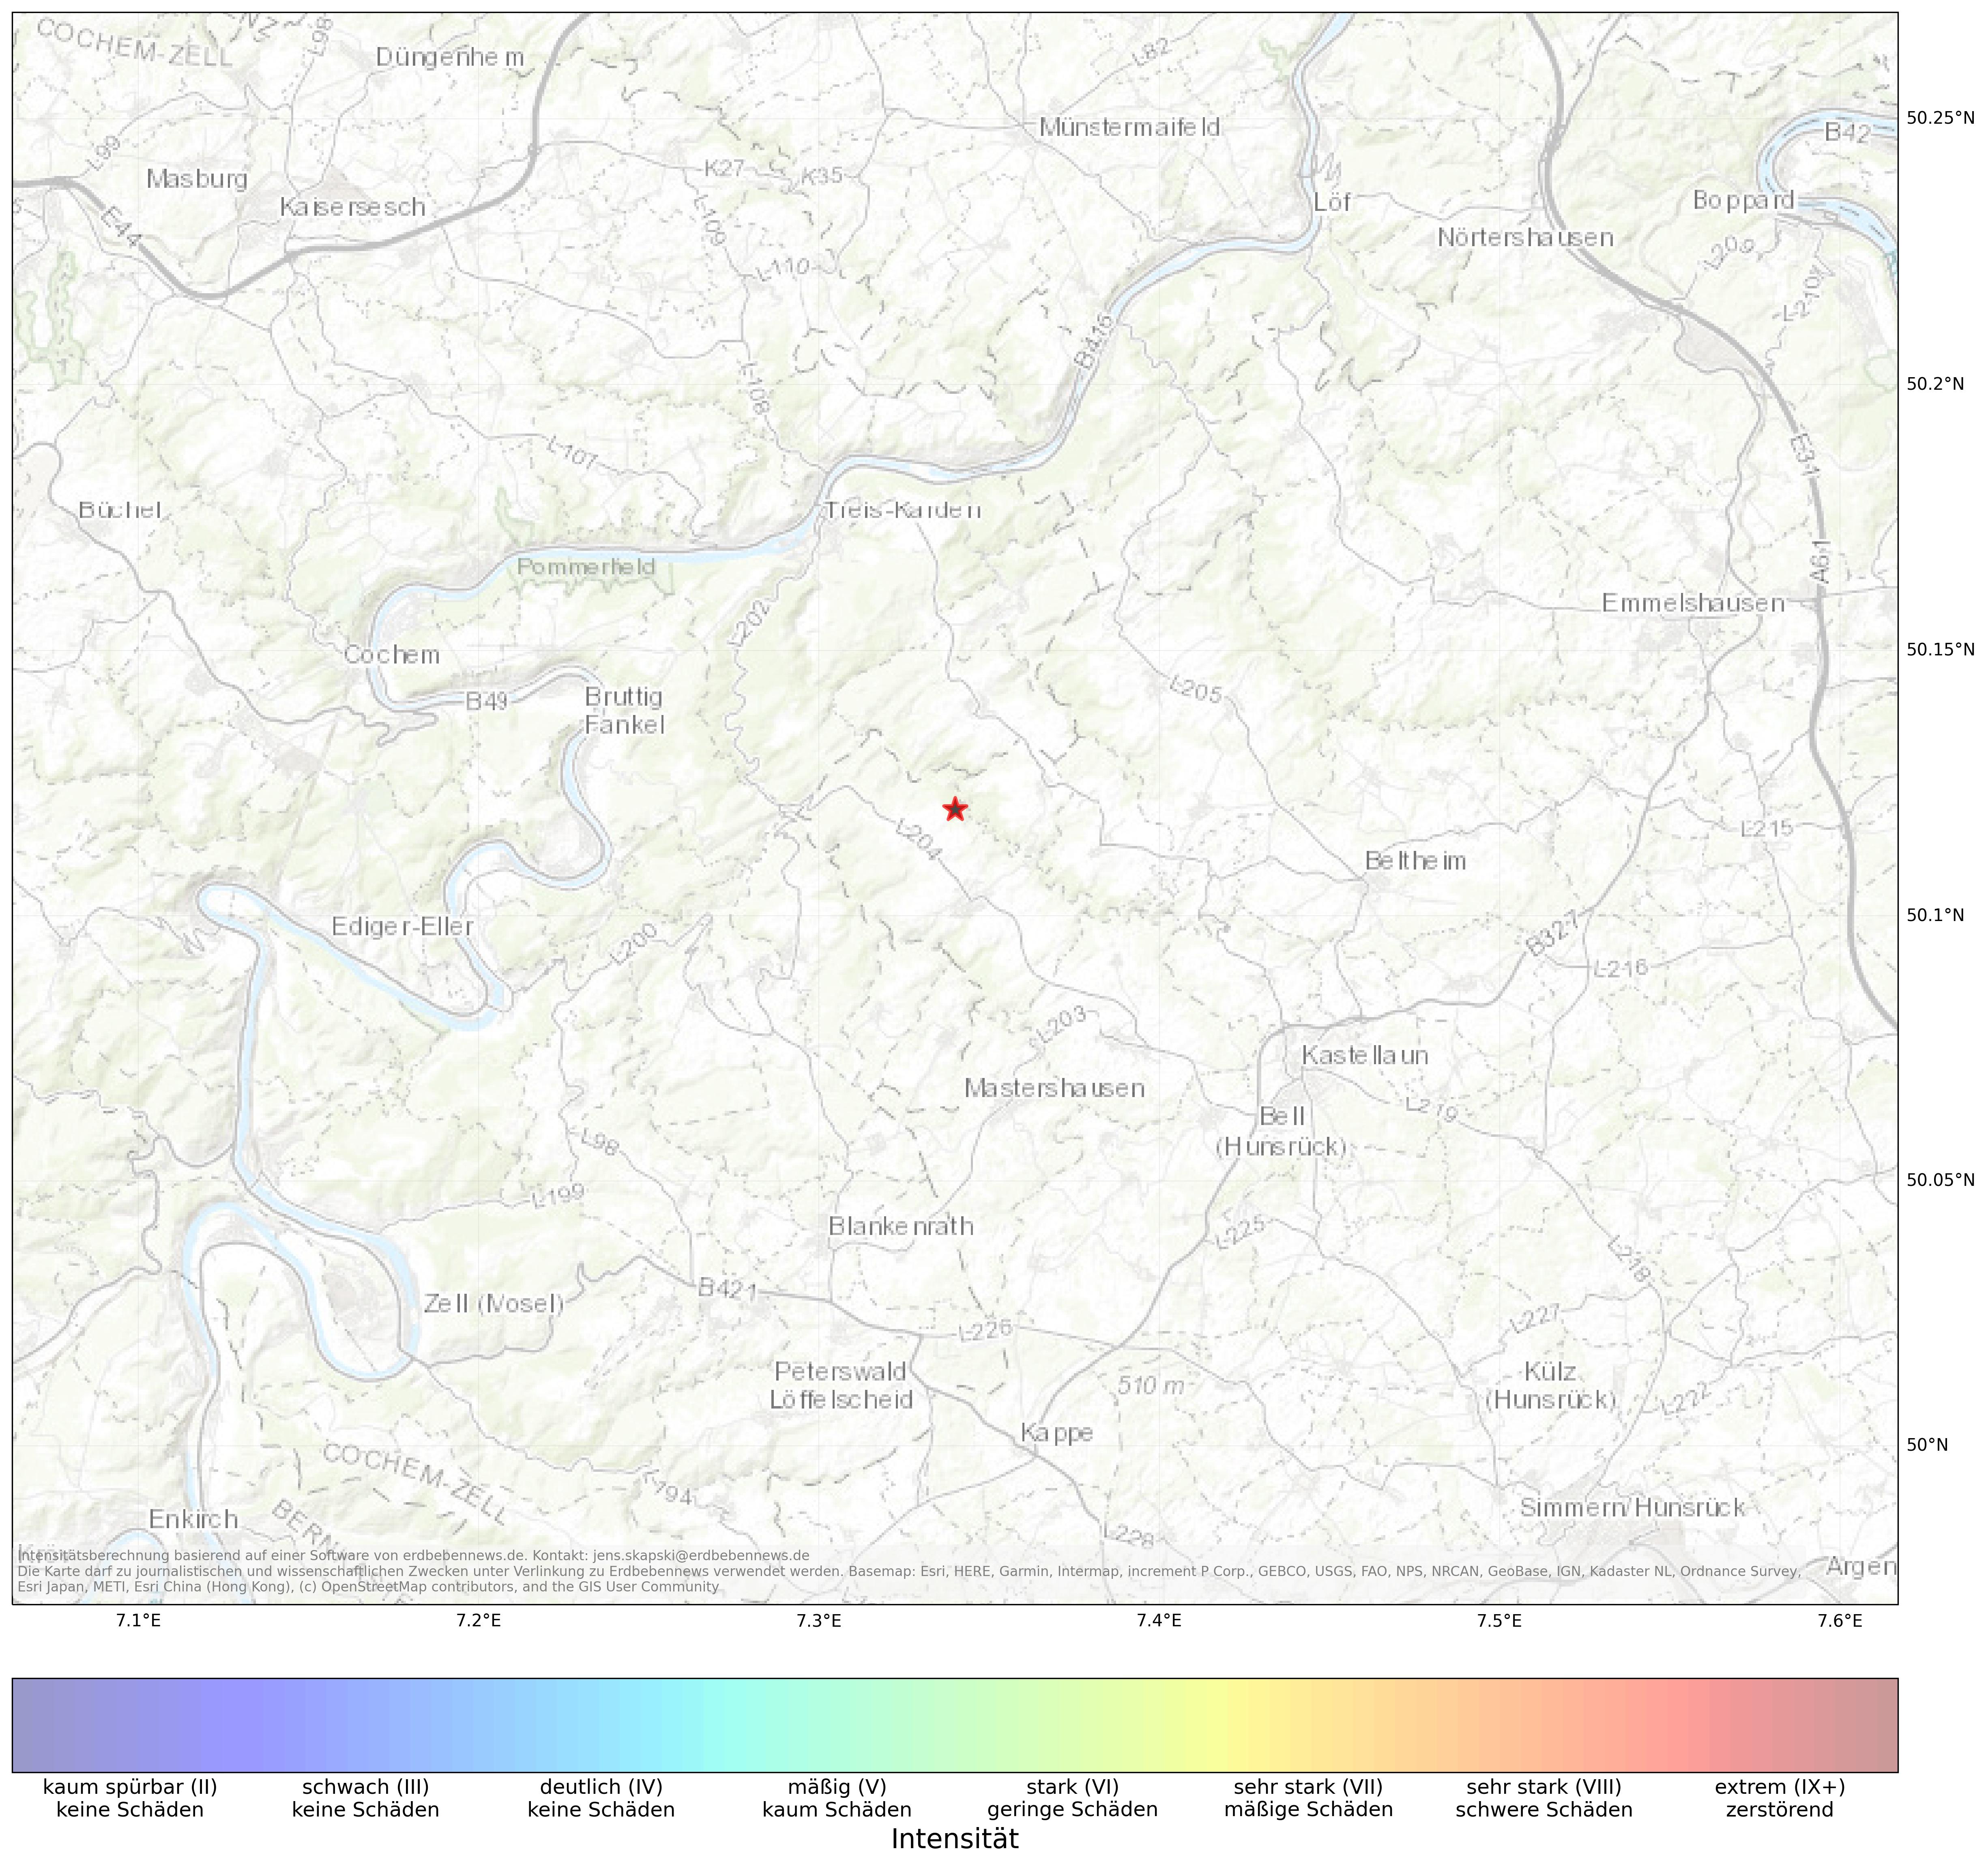 Berechnete Intensität (ShakeMap) des Erdbebens der Stärke 1.8 am 13. April, 02:53 in Deutschland